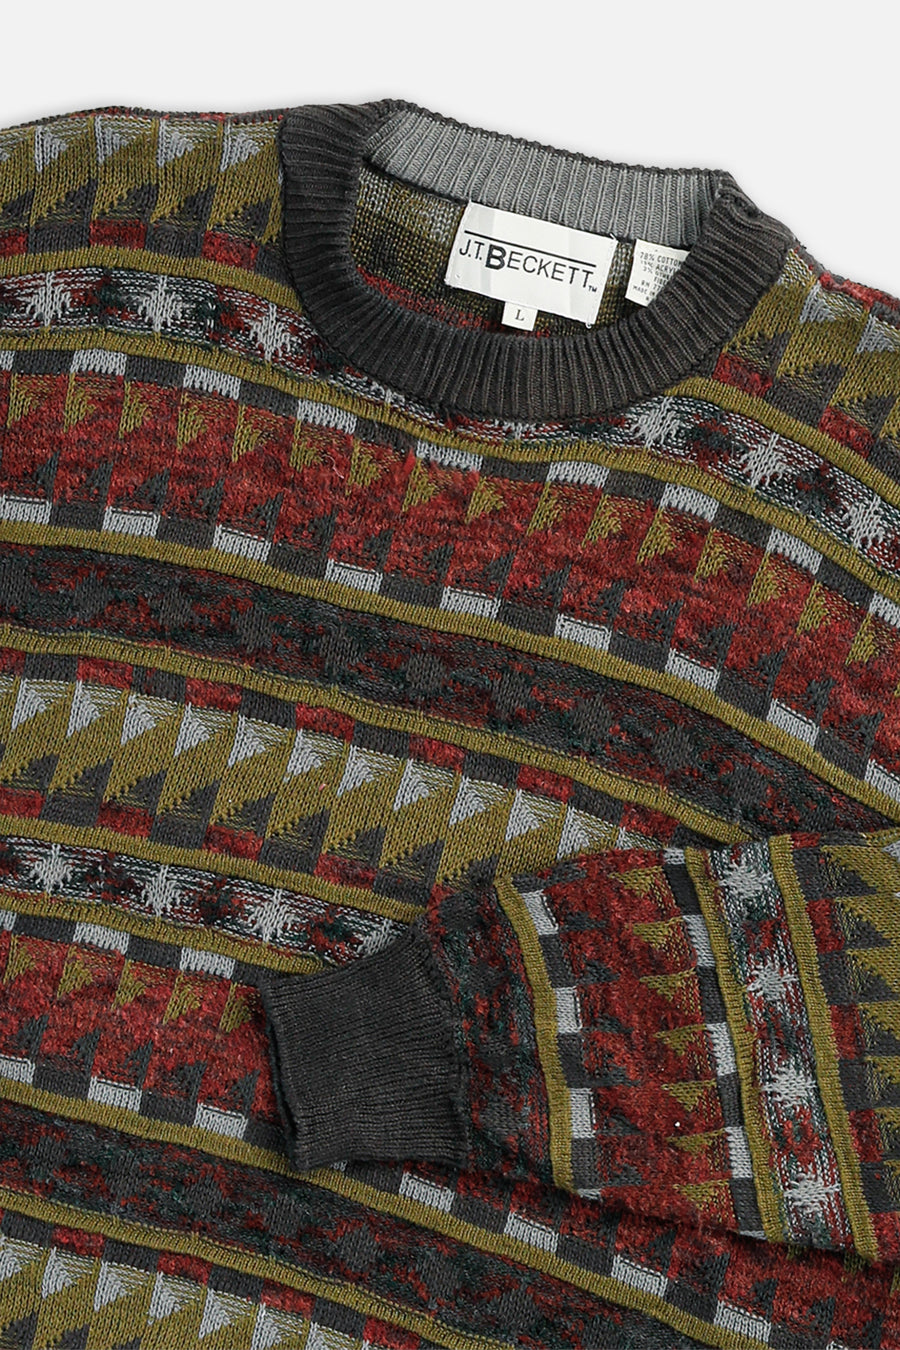 Vintage Knit Sweater - L